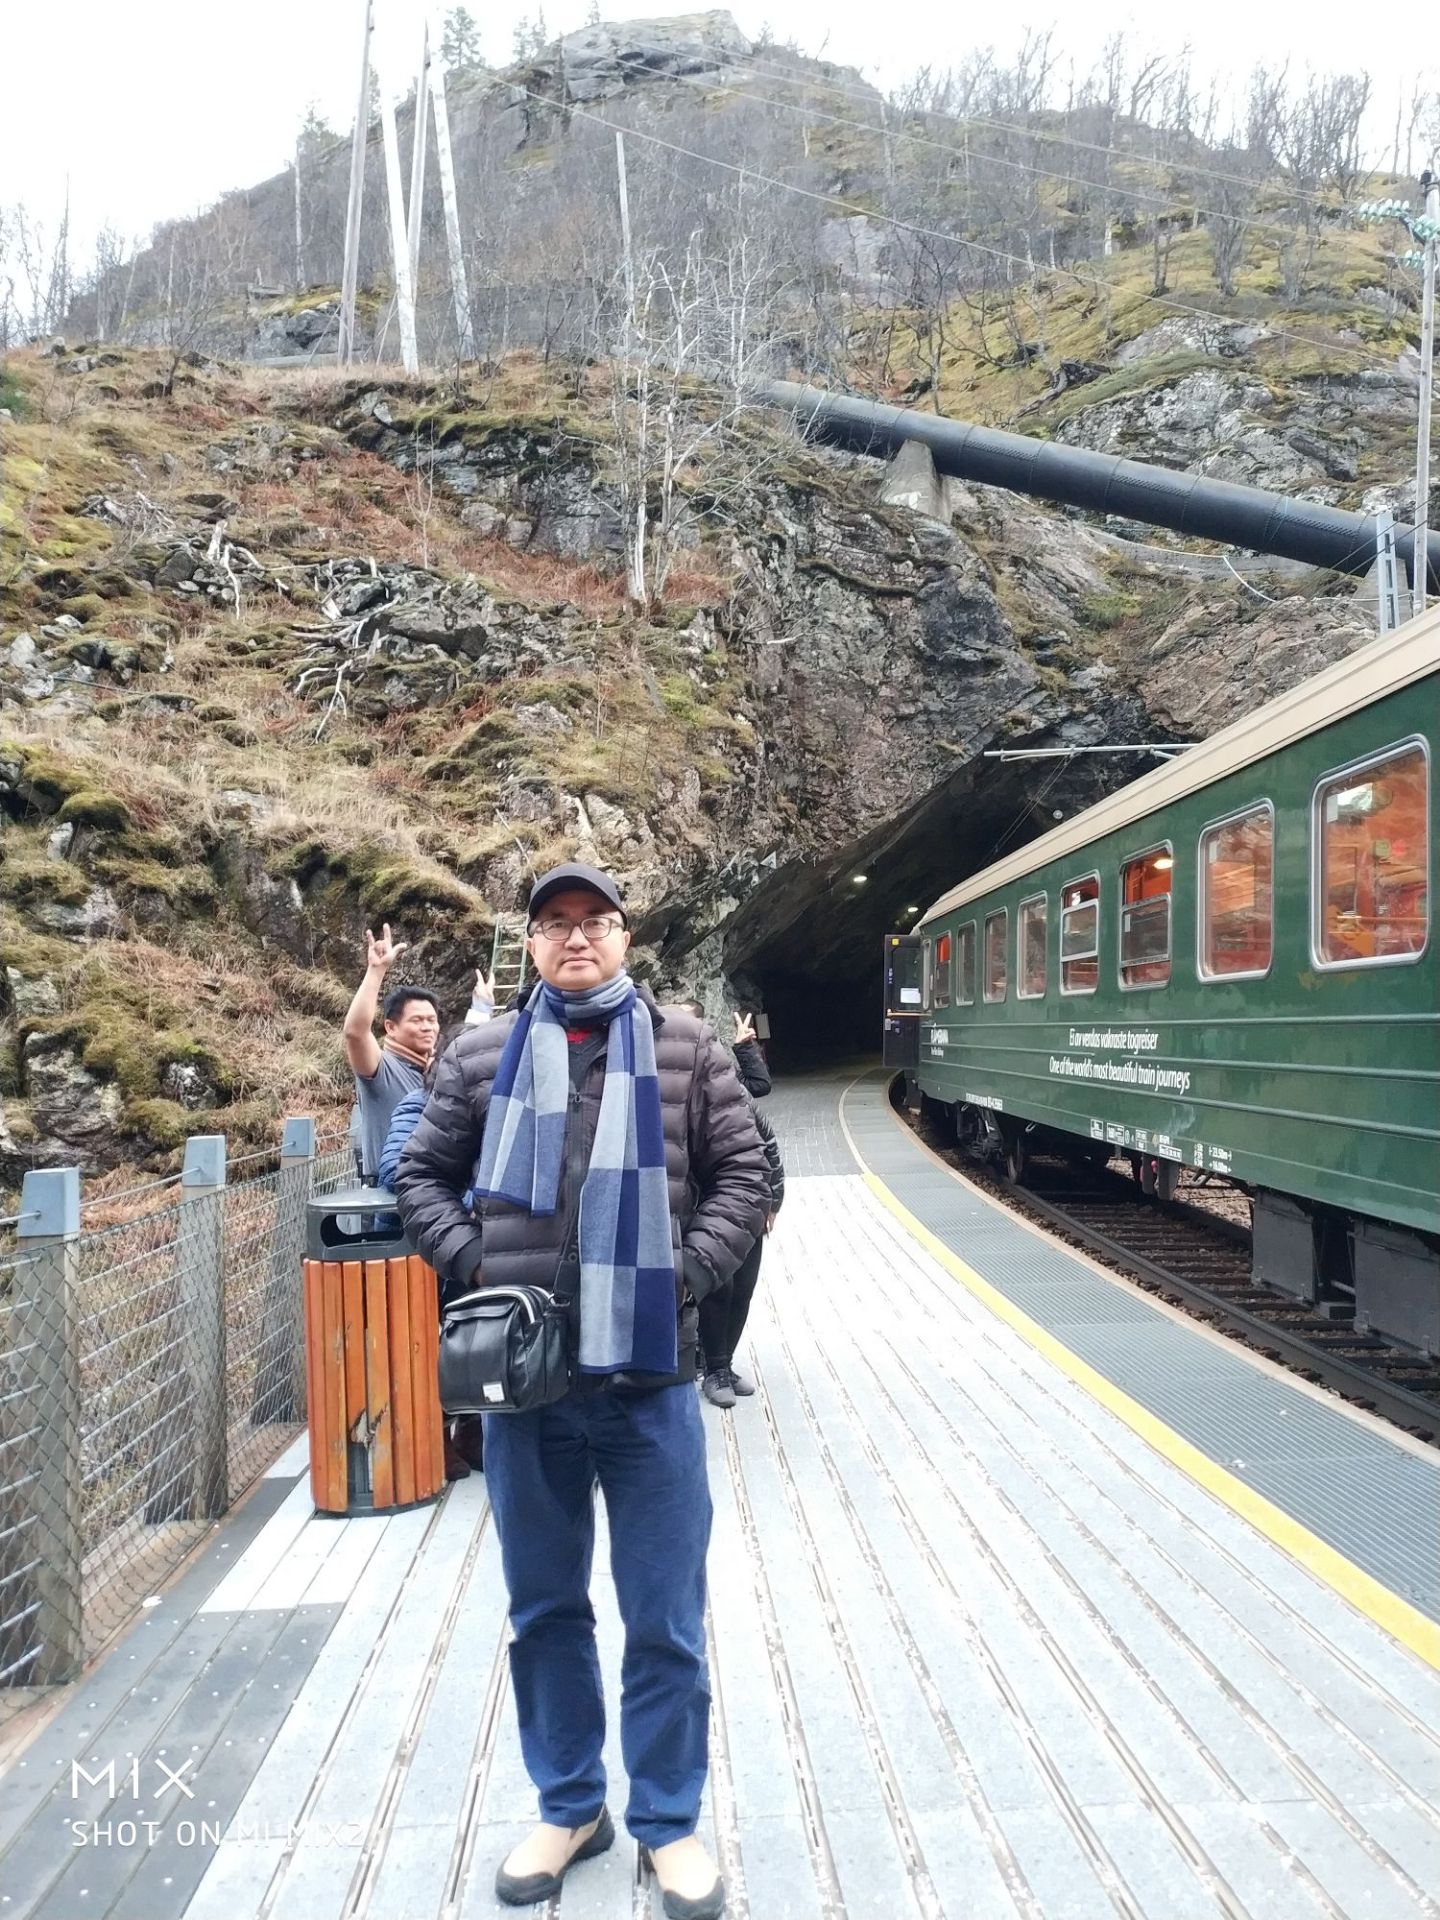 2018年年底我在挪威弗洛姆体验高山峡湾火车。弗洛姆的高山铁路连接了松恩峡湾的出发点——小镇弗洛姆(